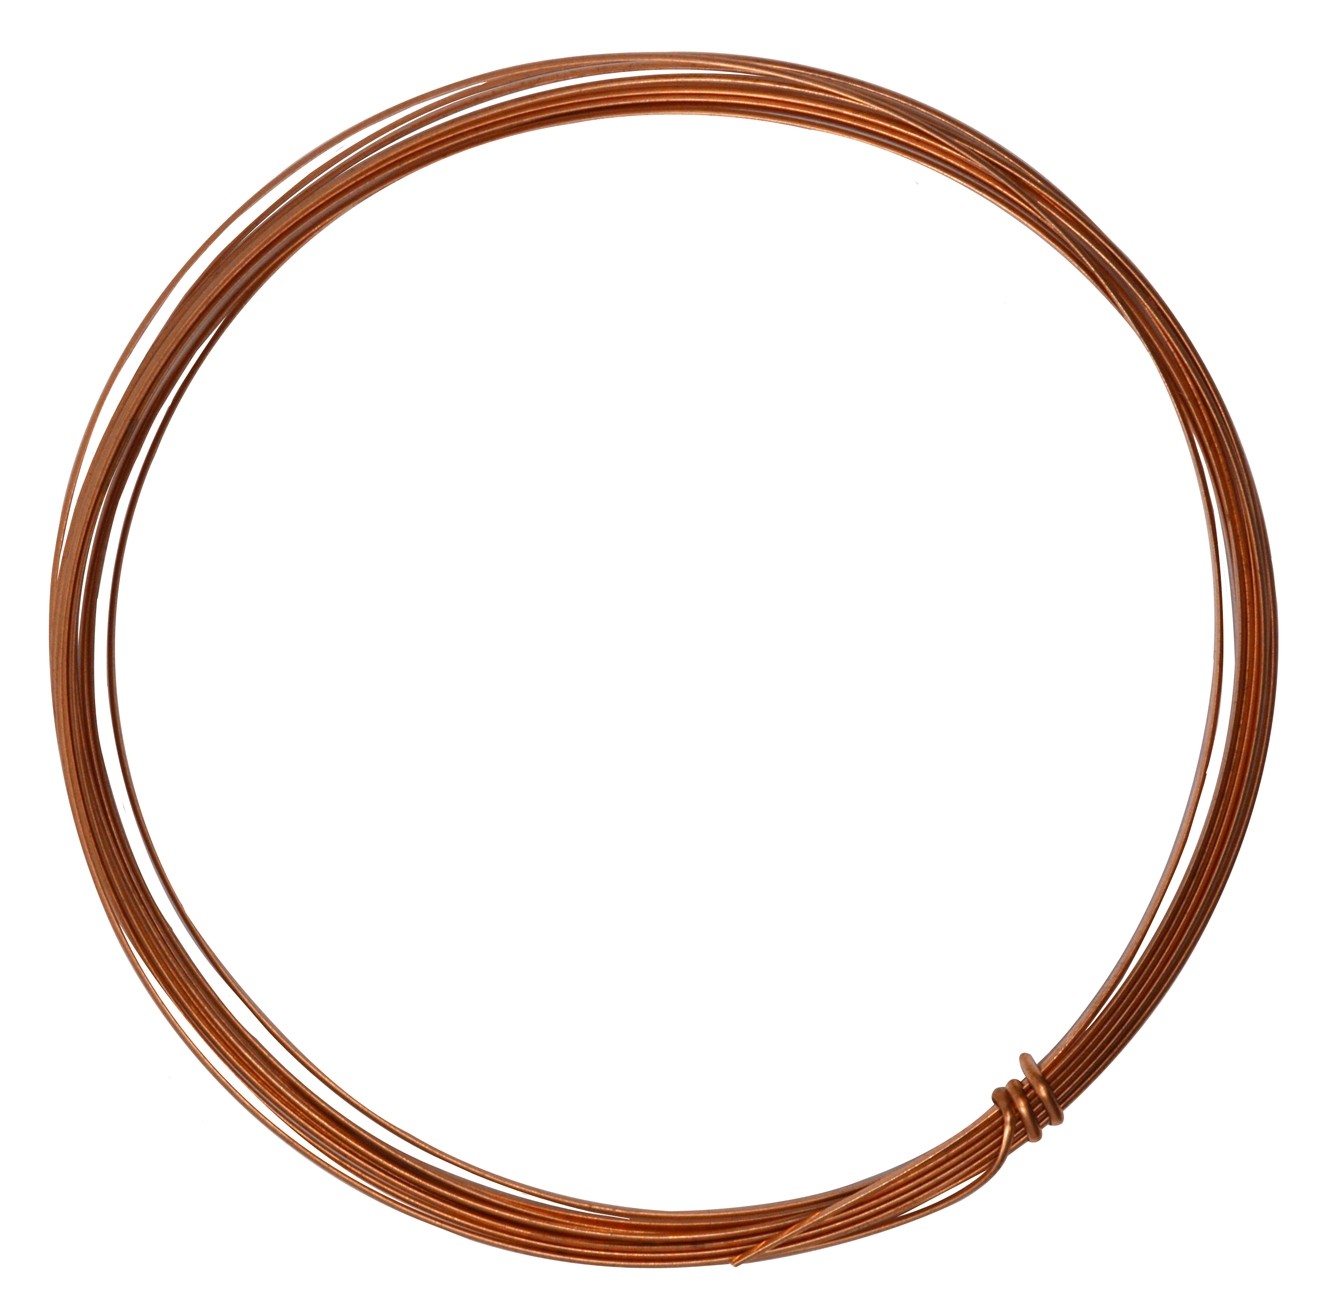 10' Half Round Half Hard Copper Wire - 16 Gauge, WIR-654.16